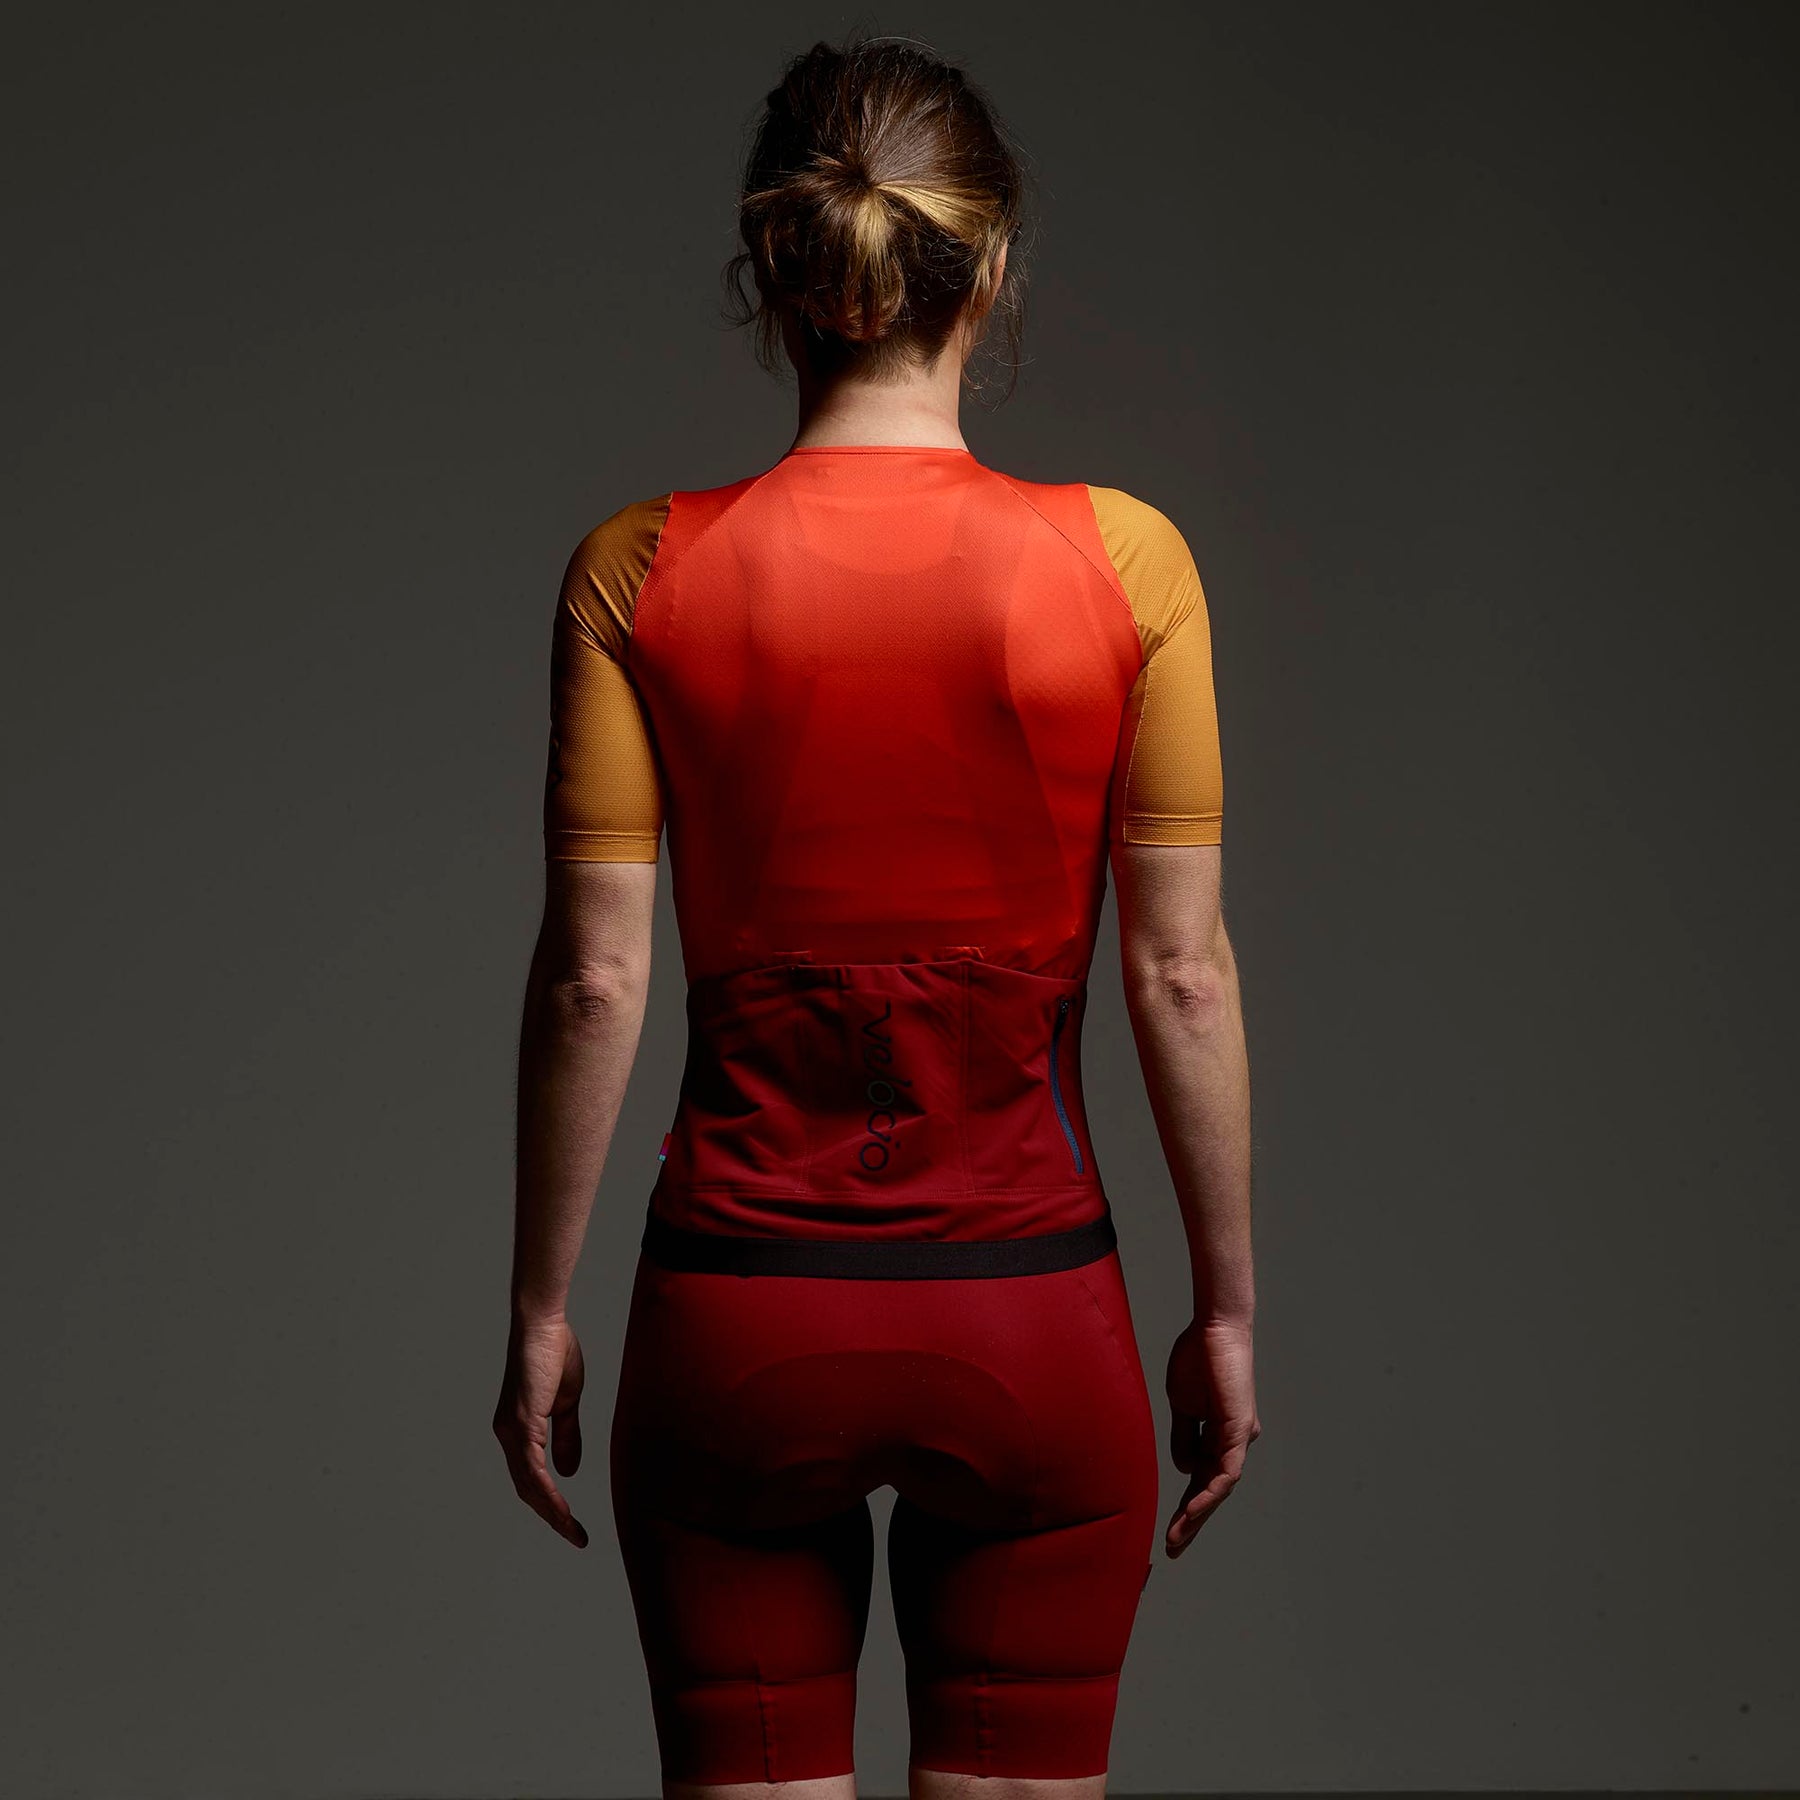 140 Hot Women In Cycling Lycra ideas